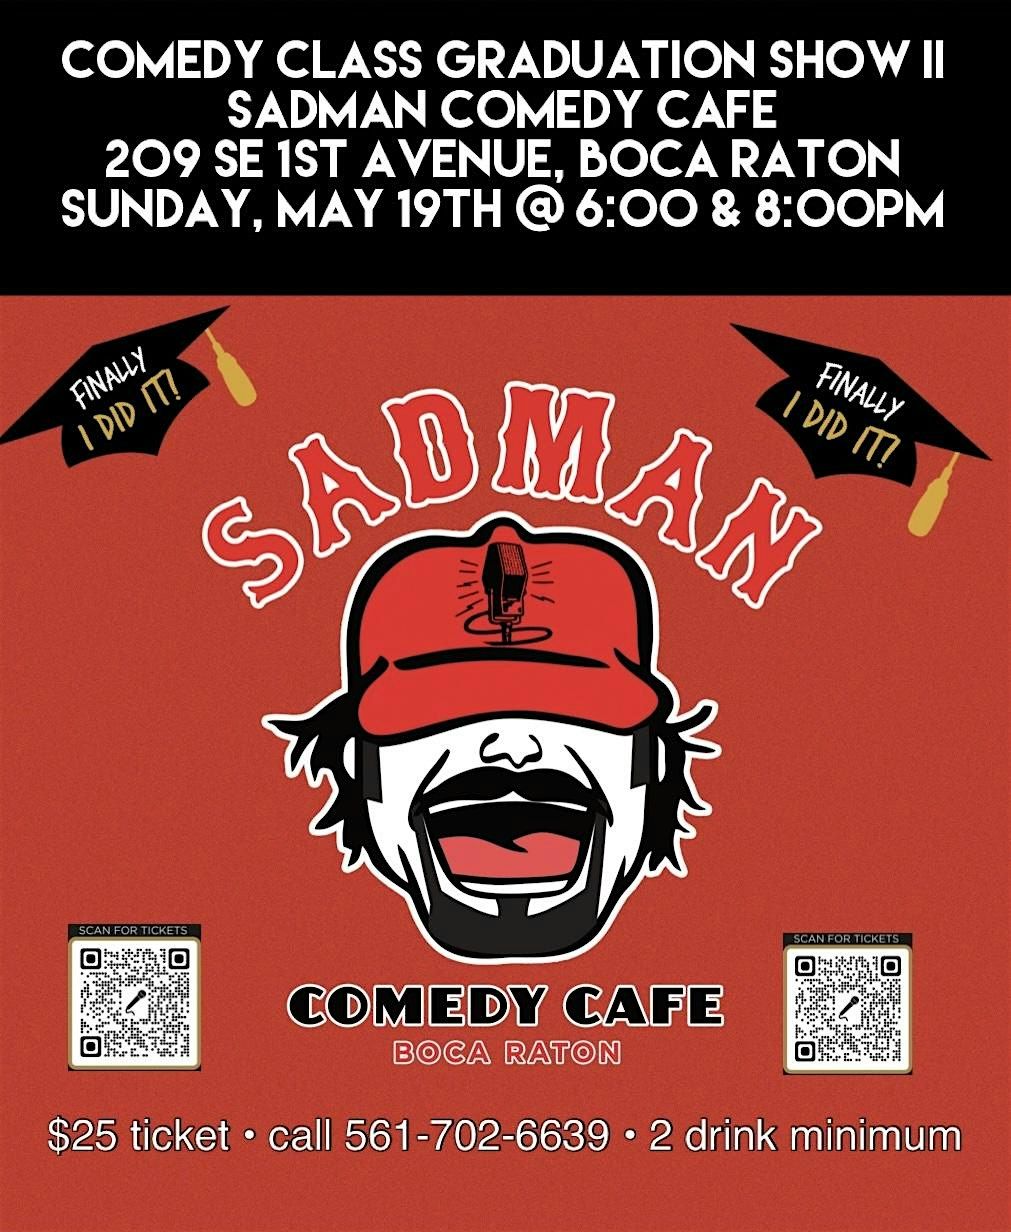 Comedy Class Graduation Show II At Sadman Comedy Cafe, Boca Raton,6:00 Show